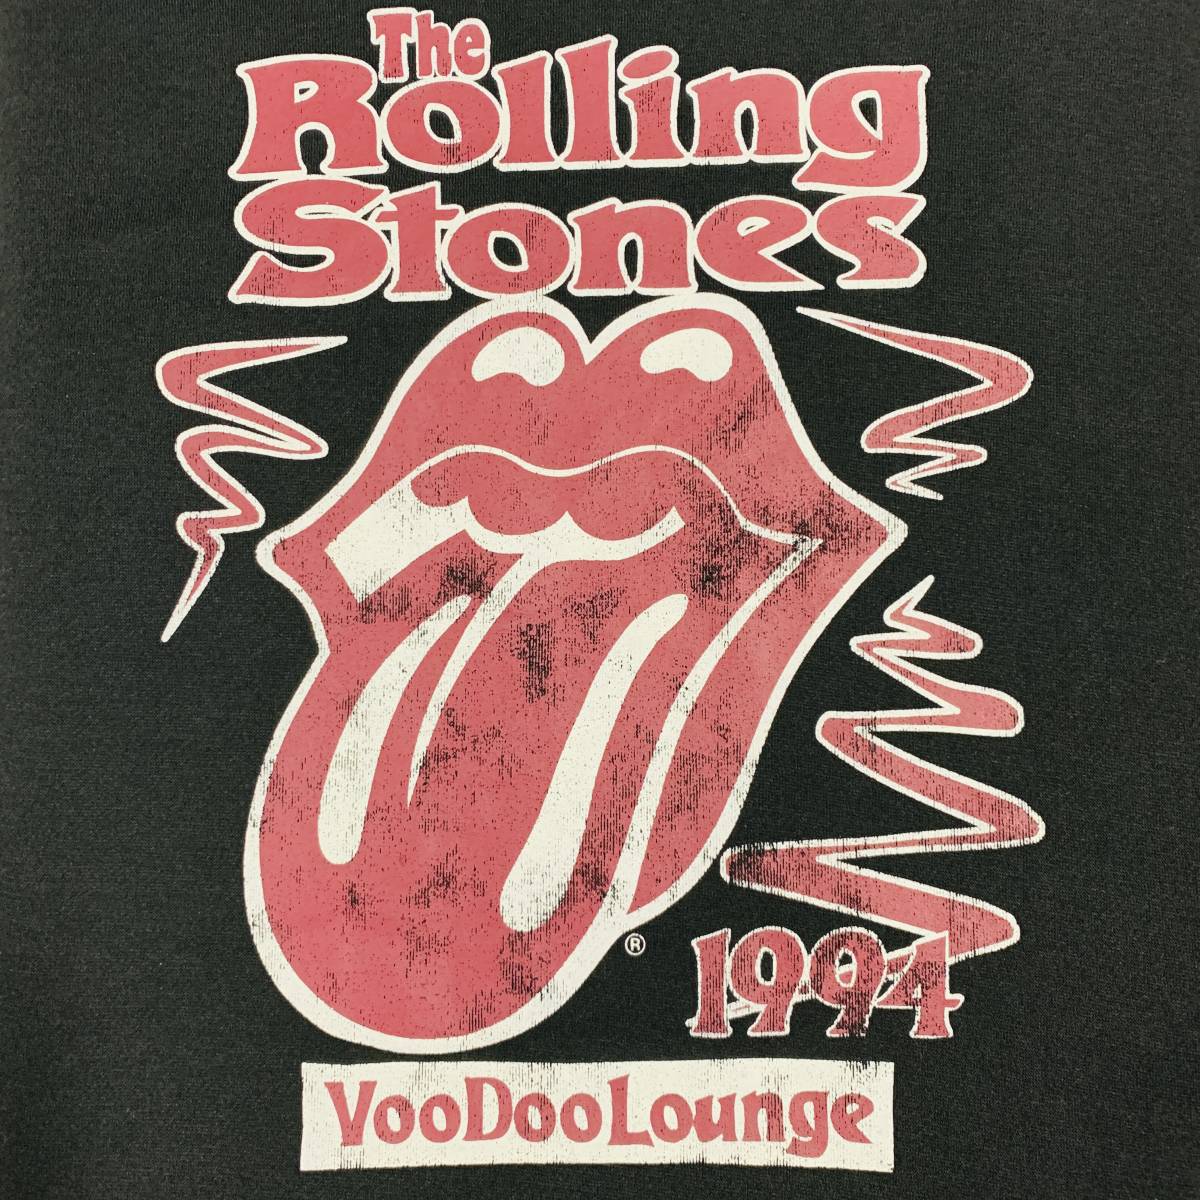 The Rolling Stones (ザ・ローリング・ストーンズ) - MEN 唇ロゴトレーナー ロックトレーナー Lサイズ 黒色 (タグ付き新品未着用品)_画像2